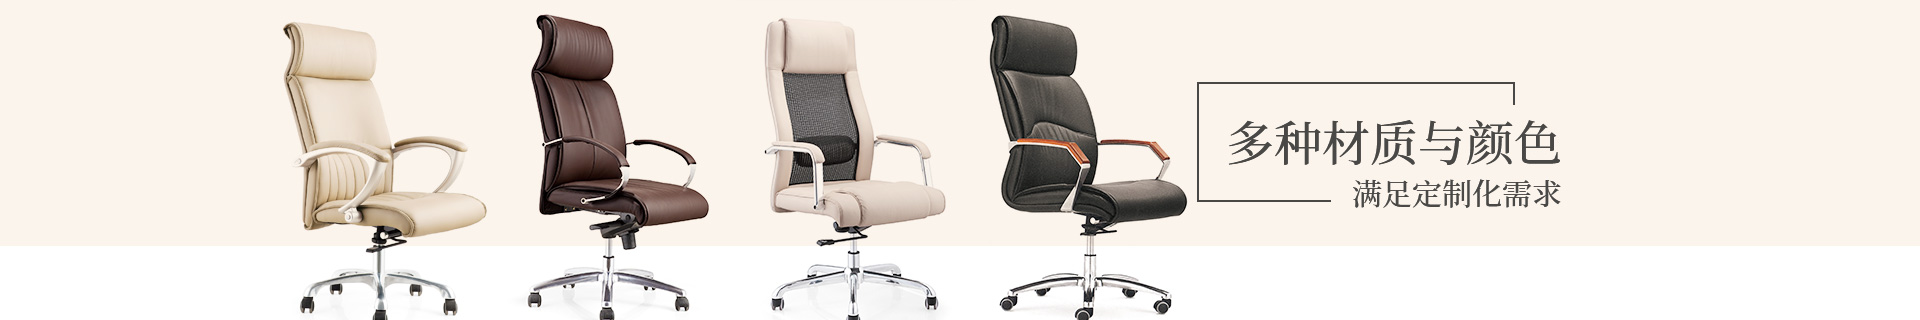 办公椅：多种材质与颜色 满足定制化需求